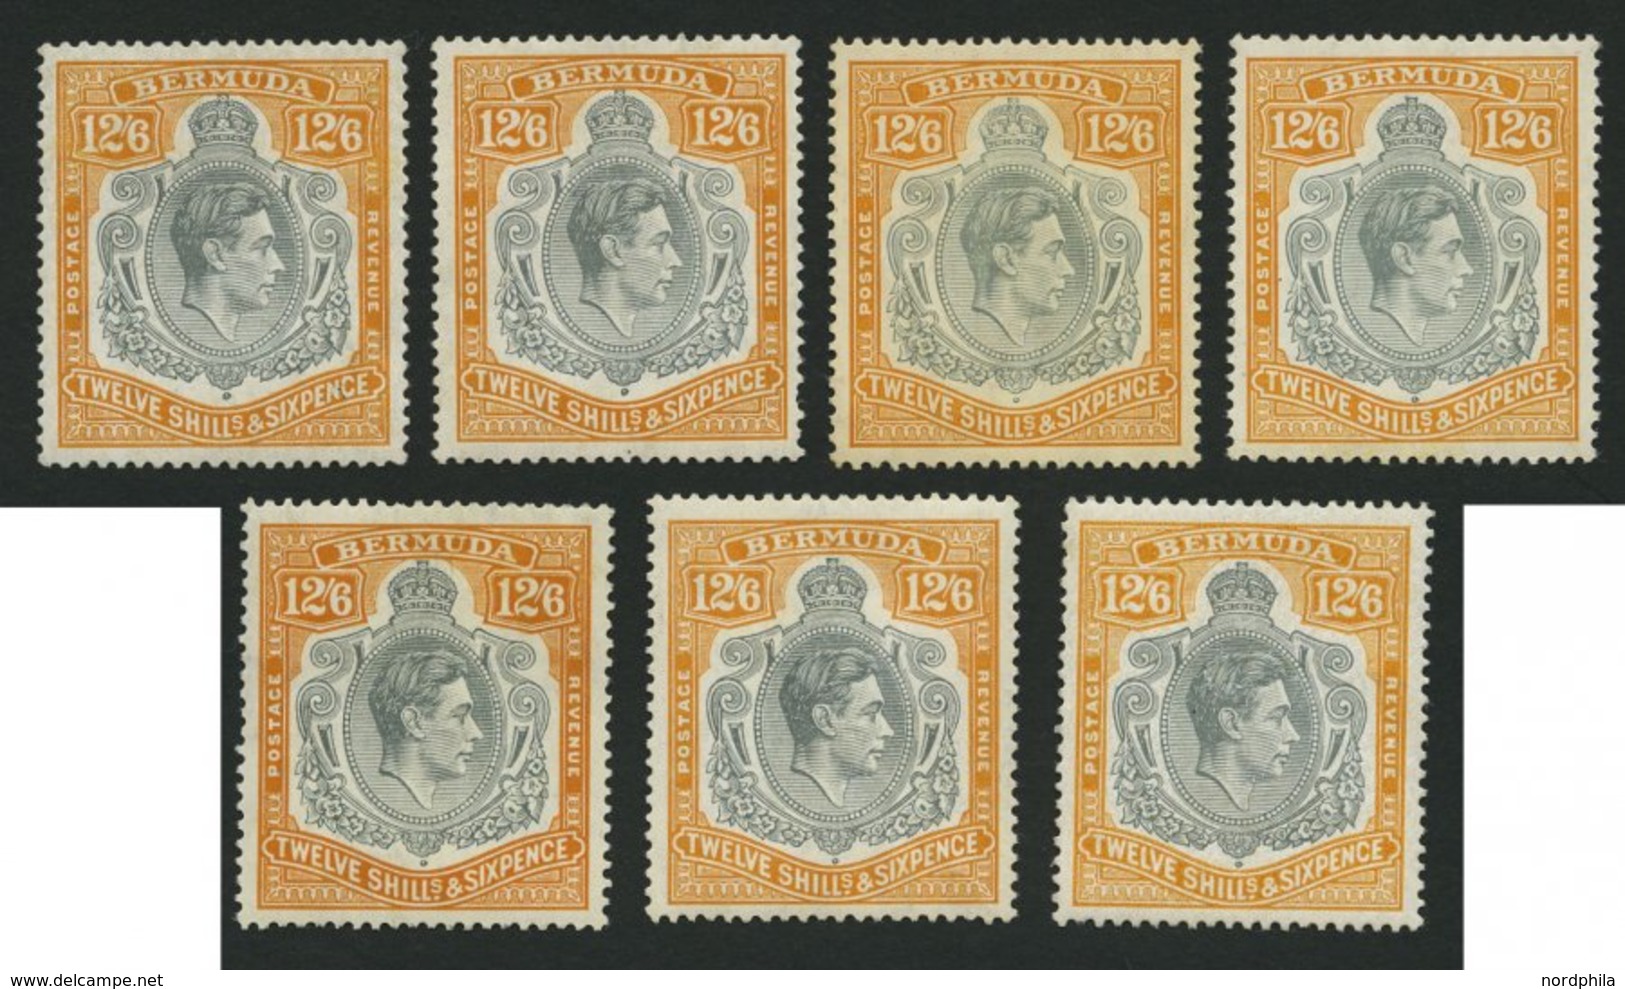 BERMUDA-INSELN 115 *, 1938-47, 12 Sh. 6 P., Gezähnt 14, 7 Werte In Nuancen, Falzreste, Fast Nur Prachterhaltung - Bermudes